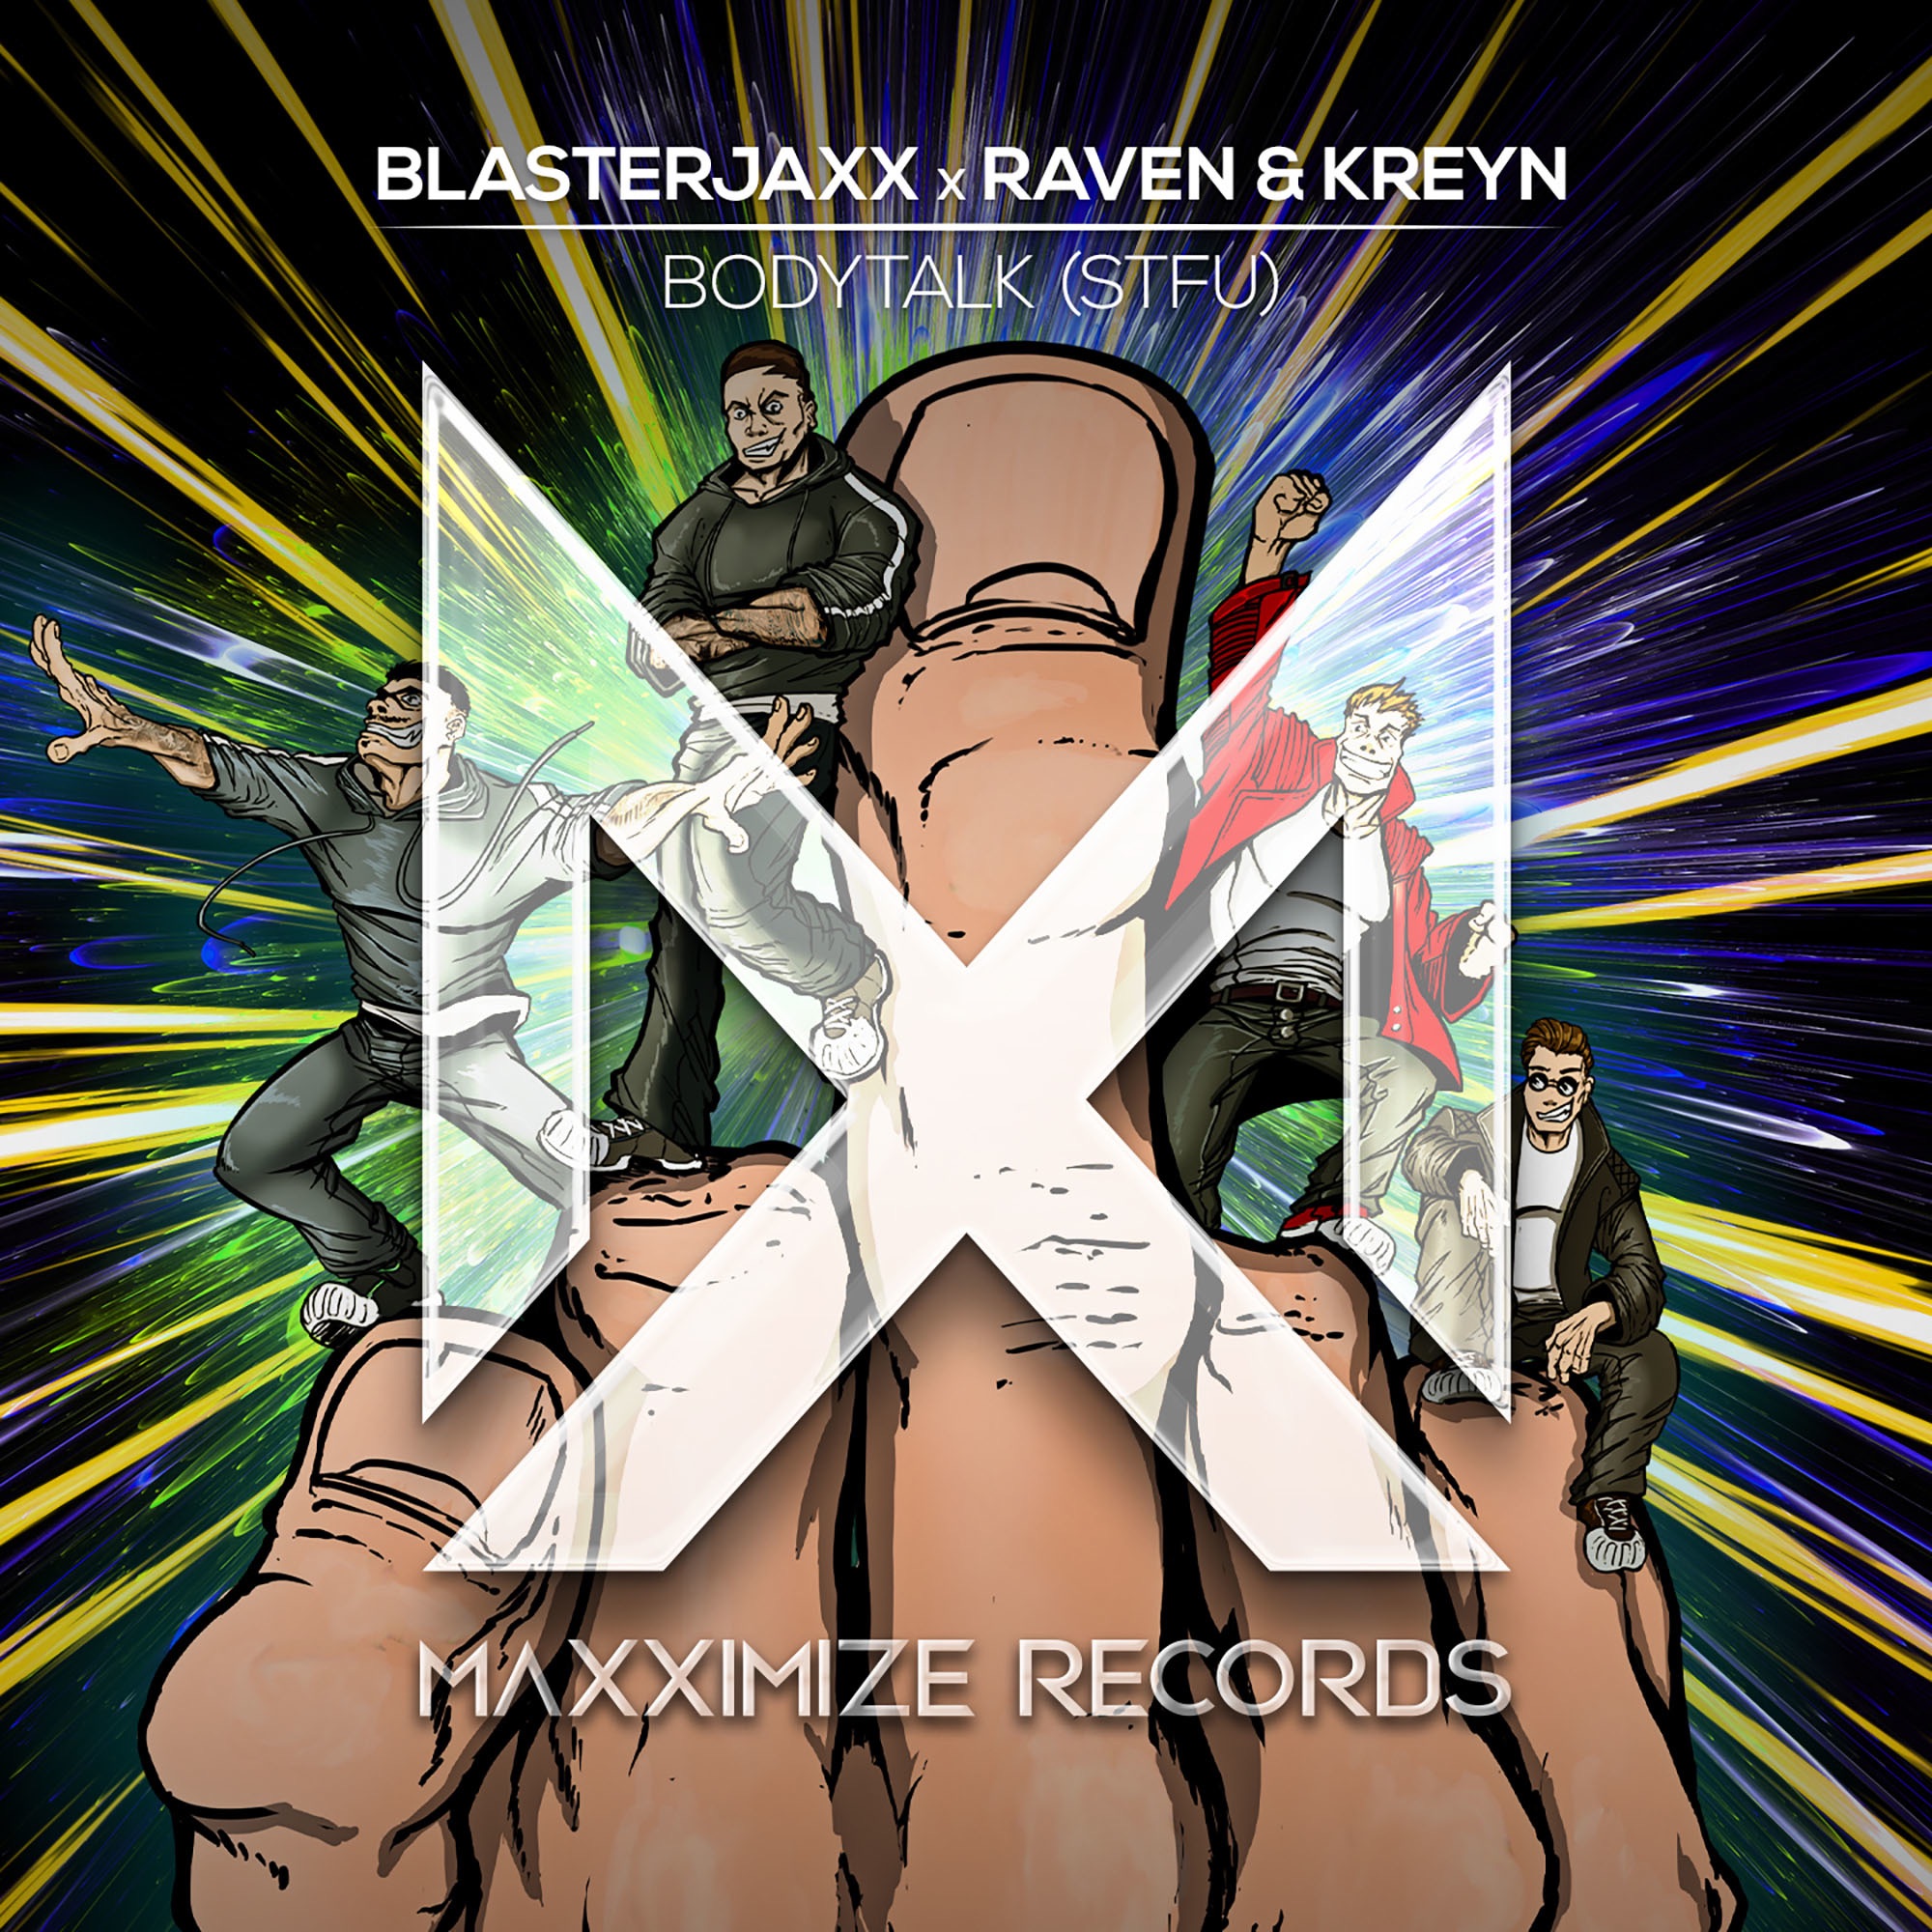 Blasterjaxx & Raven & Kreyn - Bodytalk (STFU) - Single